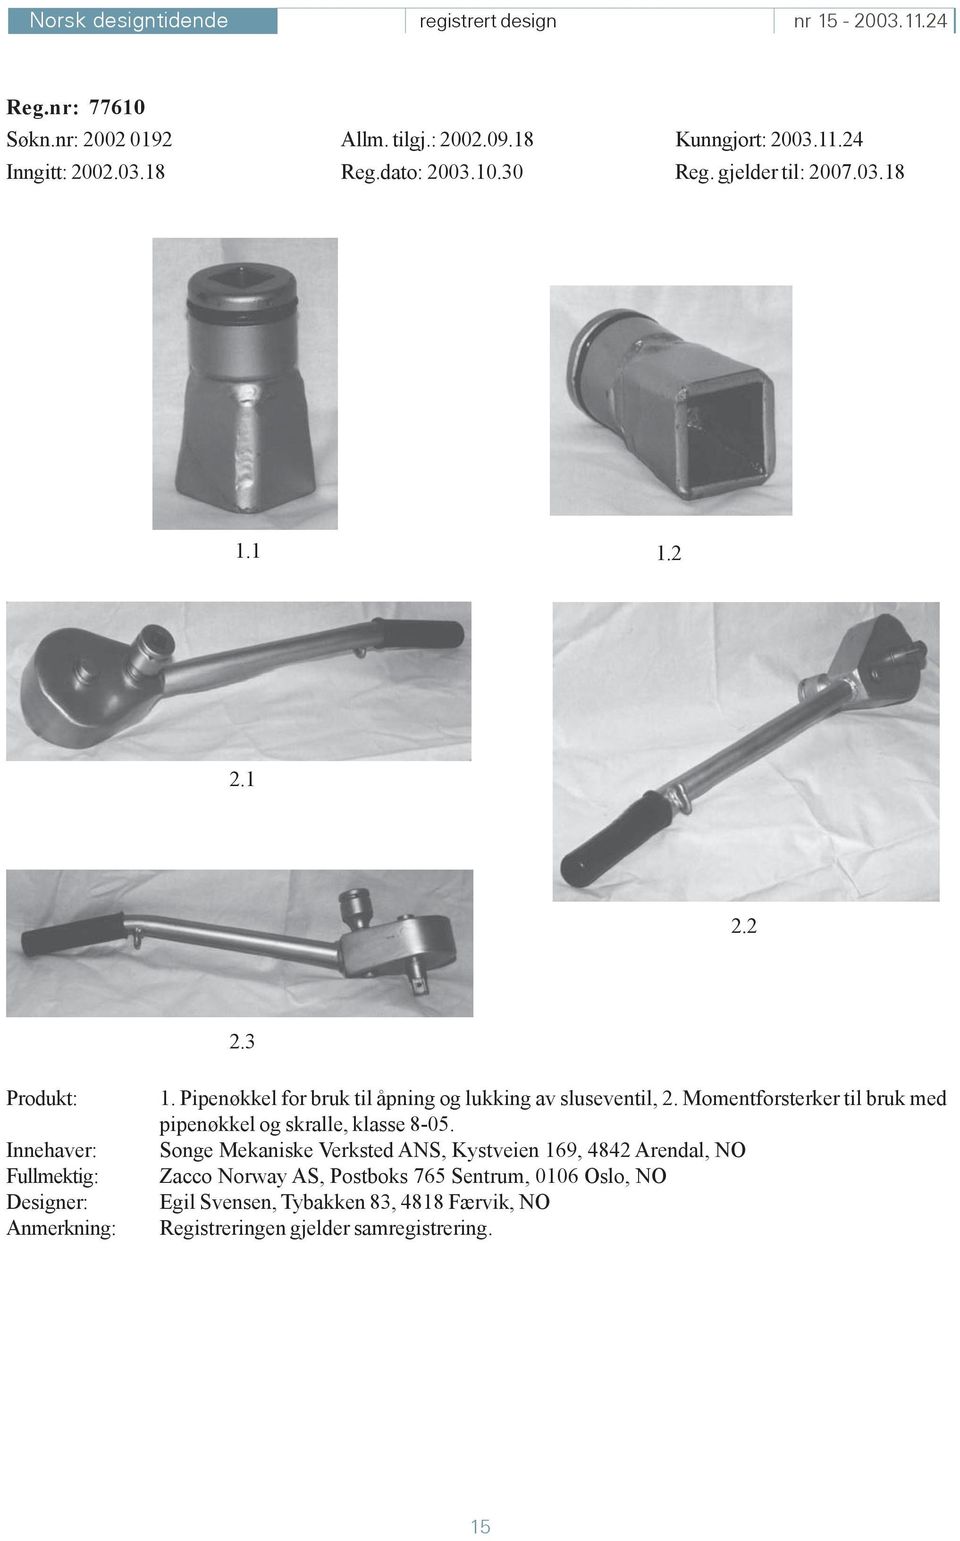 Pipenøkkel for bruk til åpning og lukking av sluseventil, 2. Momentforsterker til bruk med pipenøkkel og skralle, klasse 8-05.